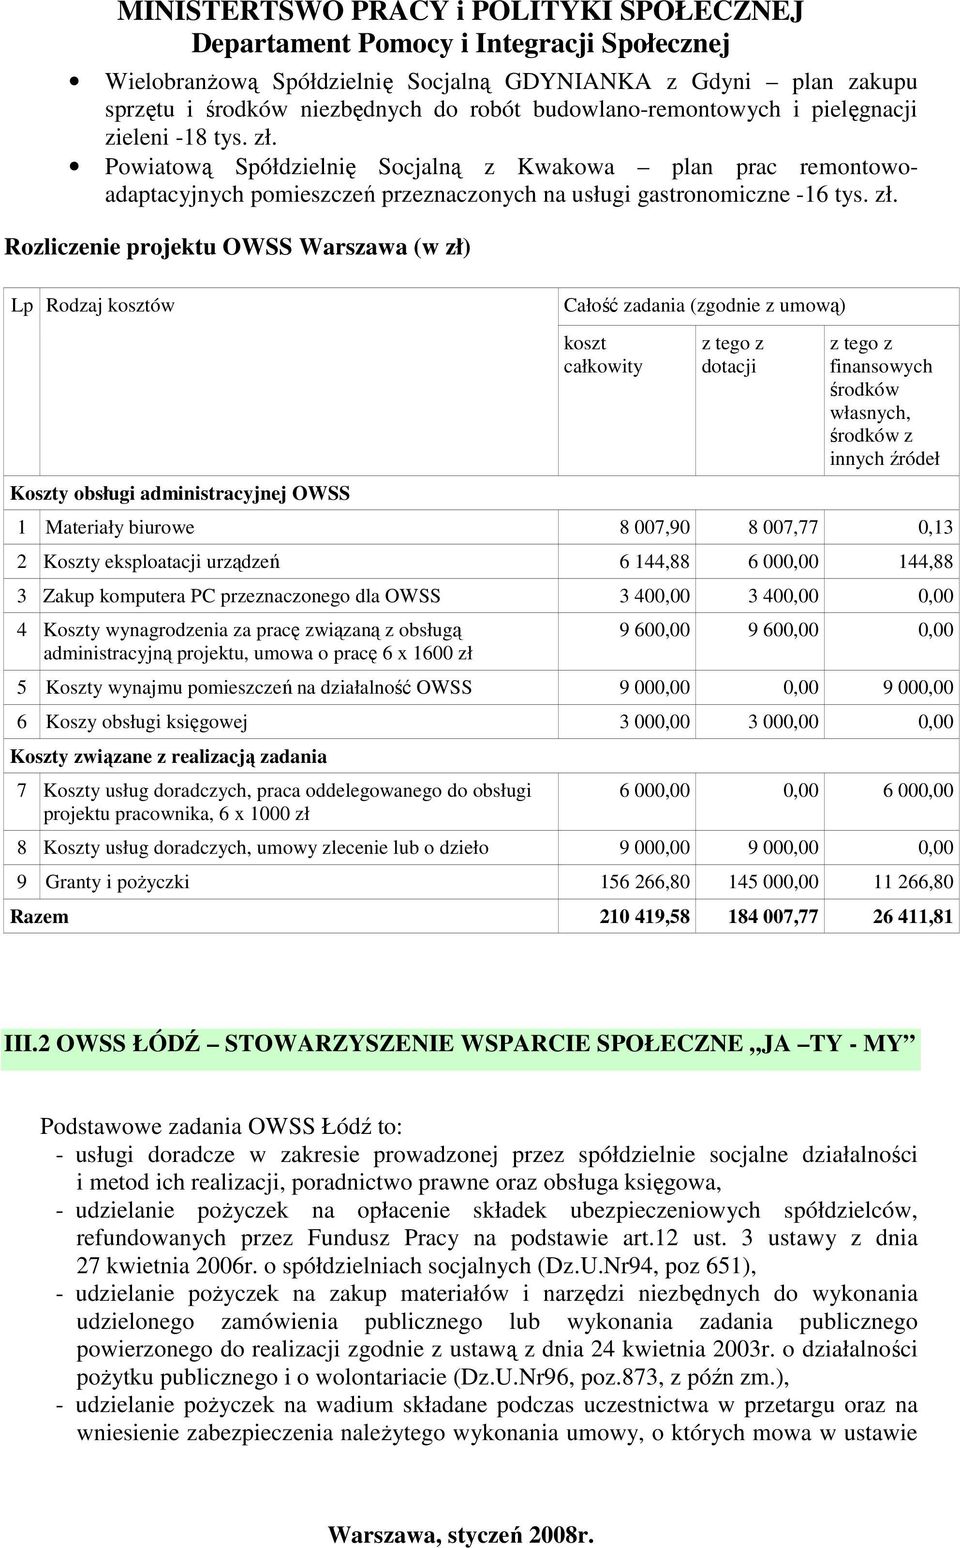 Rozliczenie projektu OWSS Warszawa (w zł) Lp Rodzaj kosztów Całość zadania (zgodnie z umową) Koszty obsługi administracyjnej OWSS koszt całkowity z tego z dotacji z tego z finansowych środków